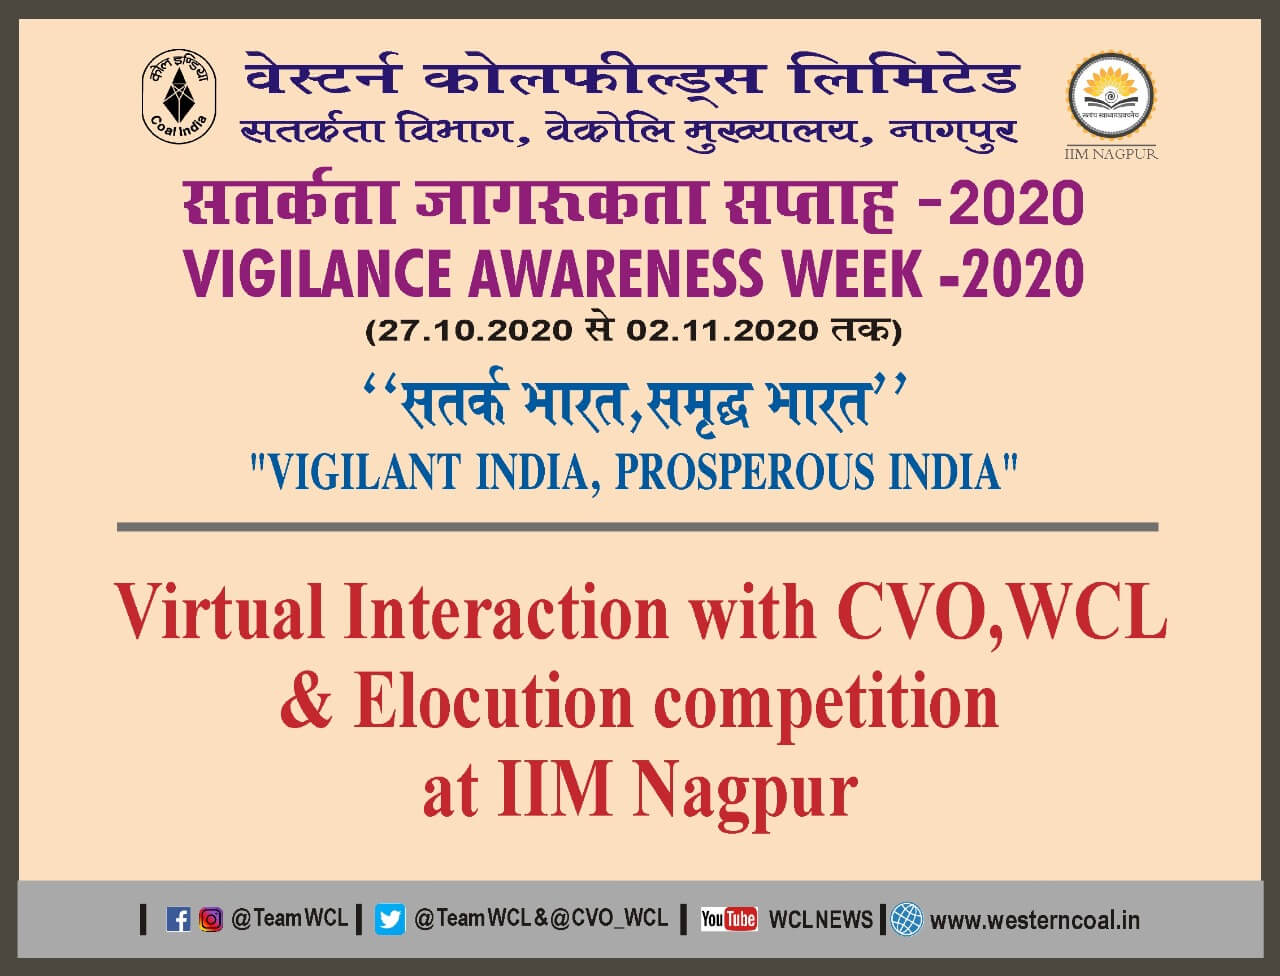 Vigilance Awareness Week 2020: Mr Amit Kumar Srivastava (WCL)